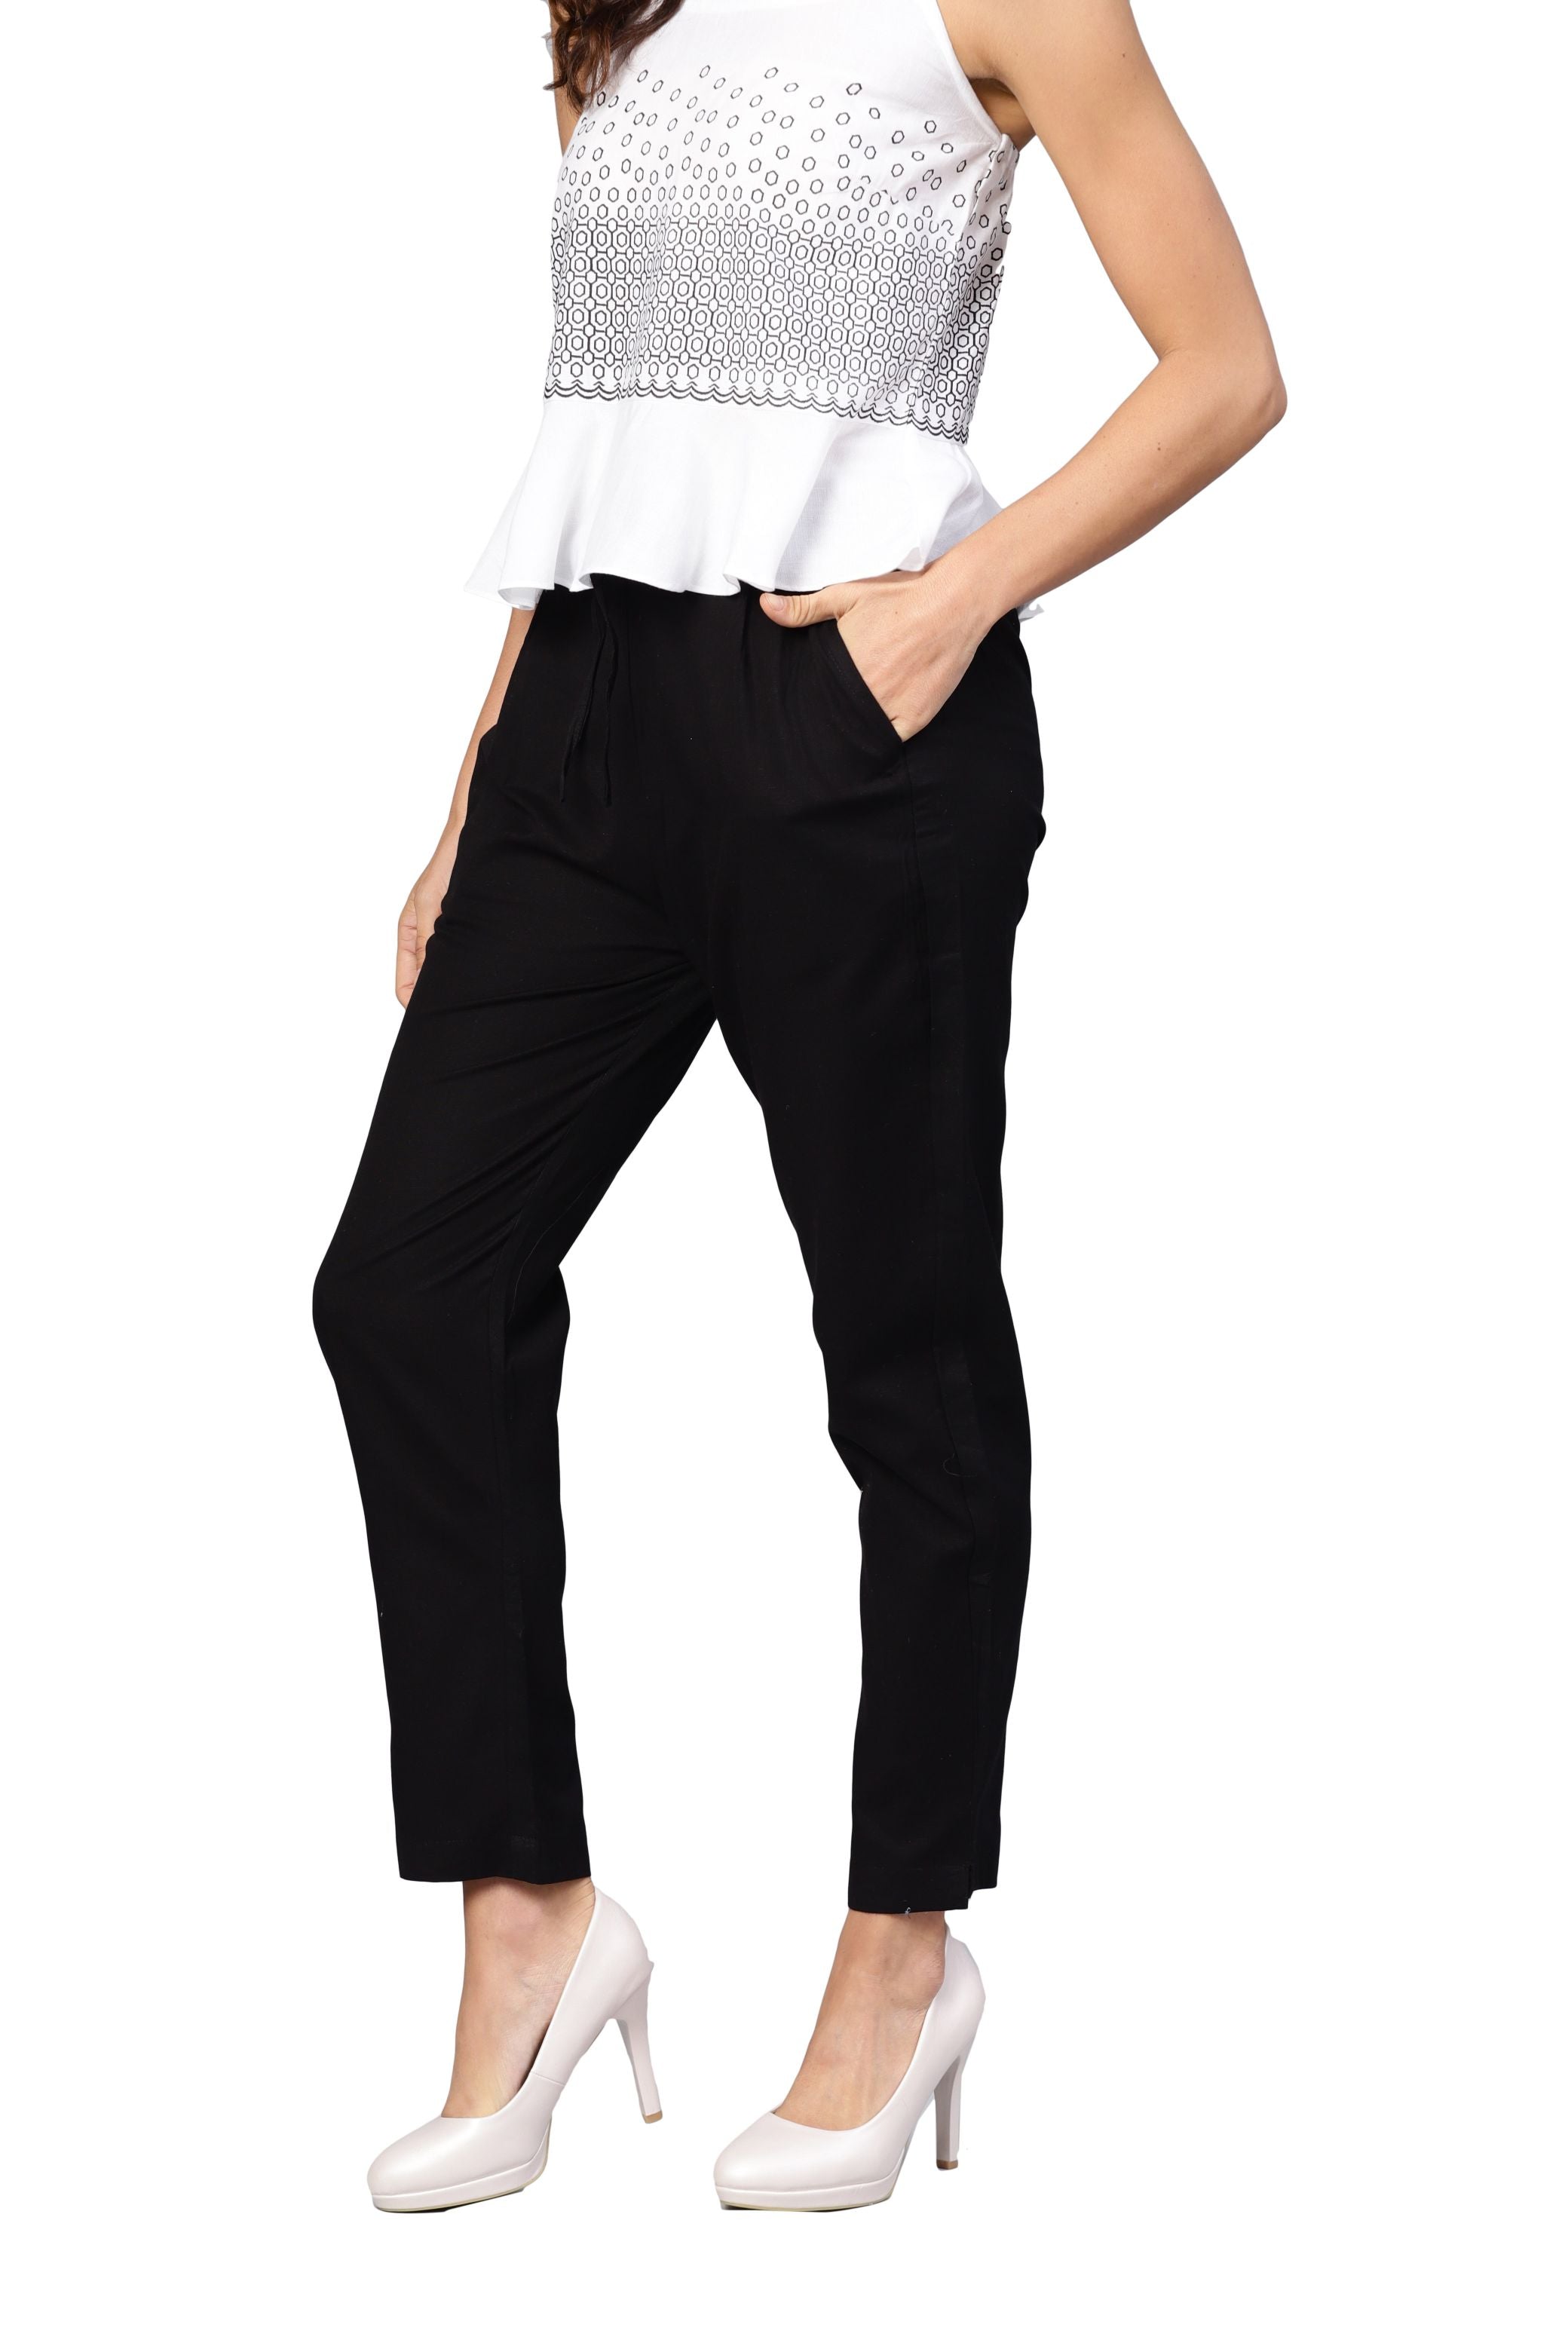 Women Black Cotton Trouser by Myshka (1 Pc Set)